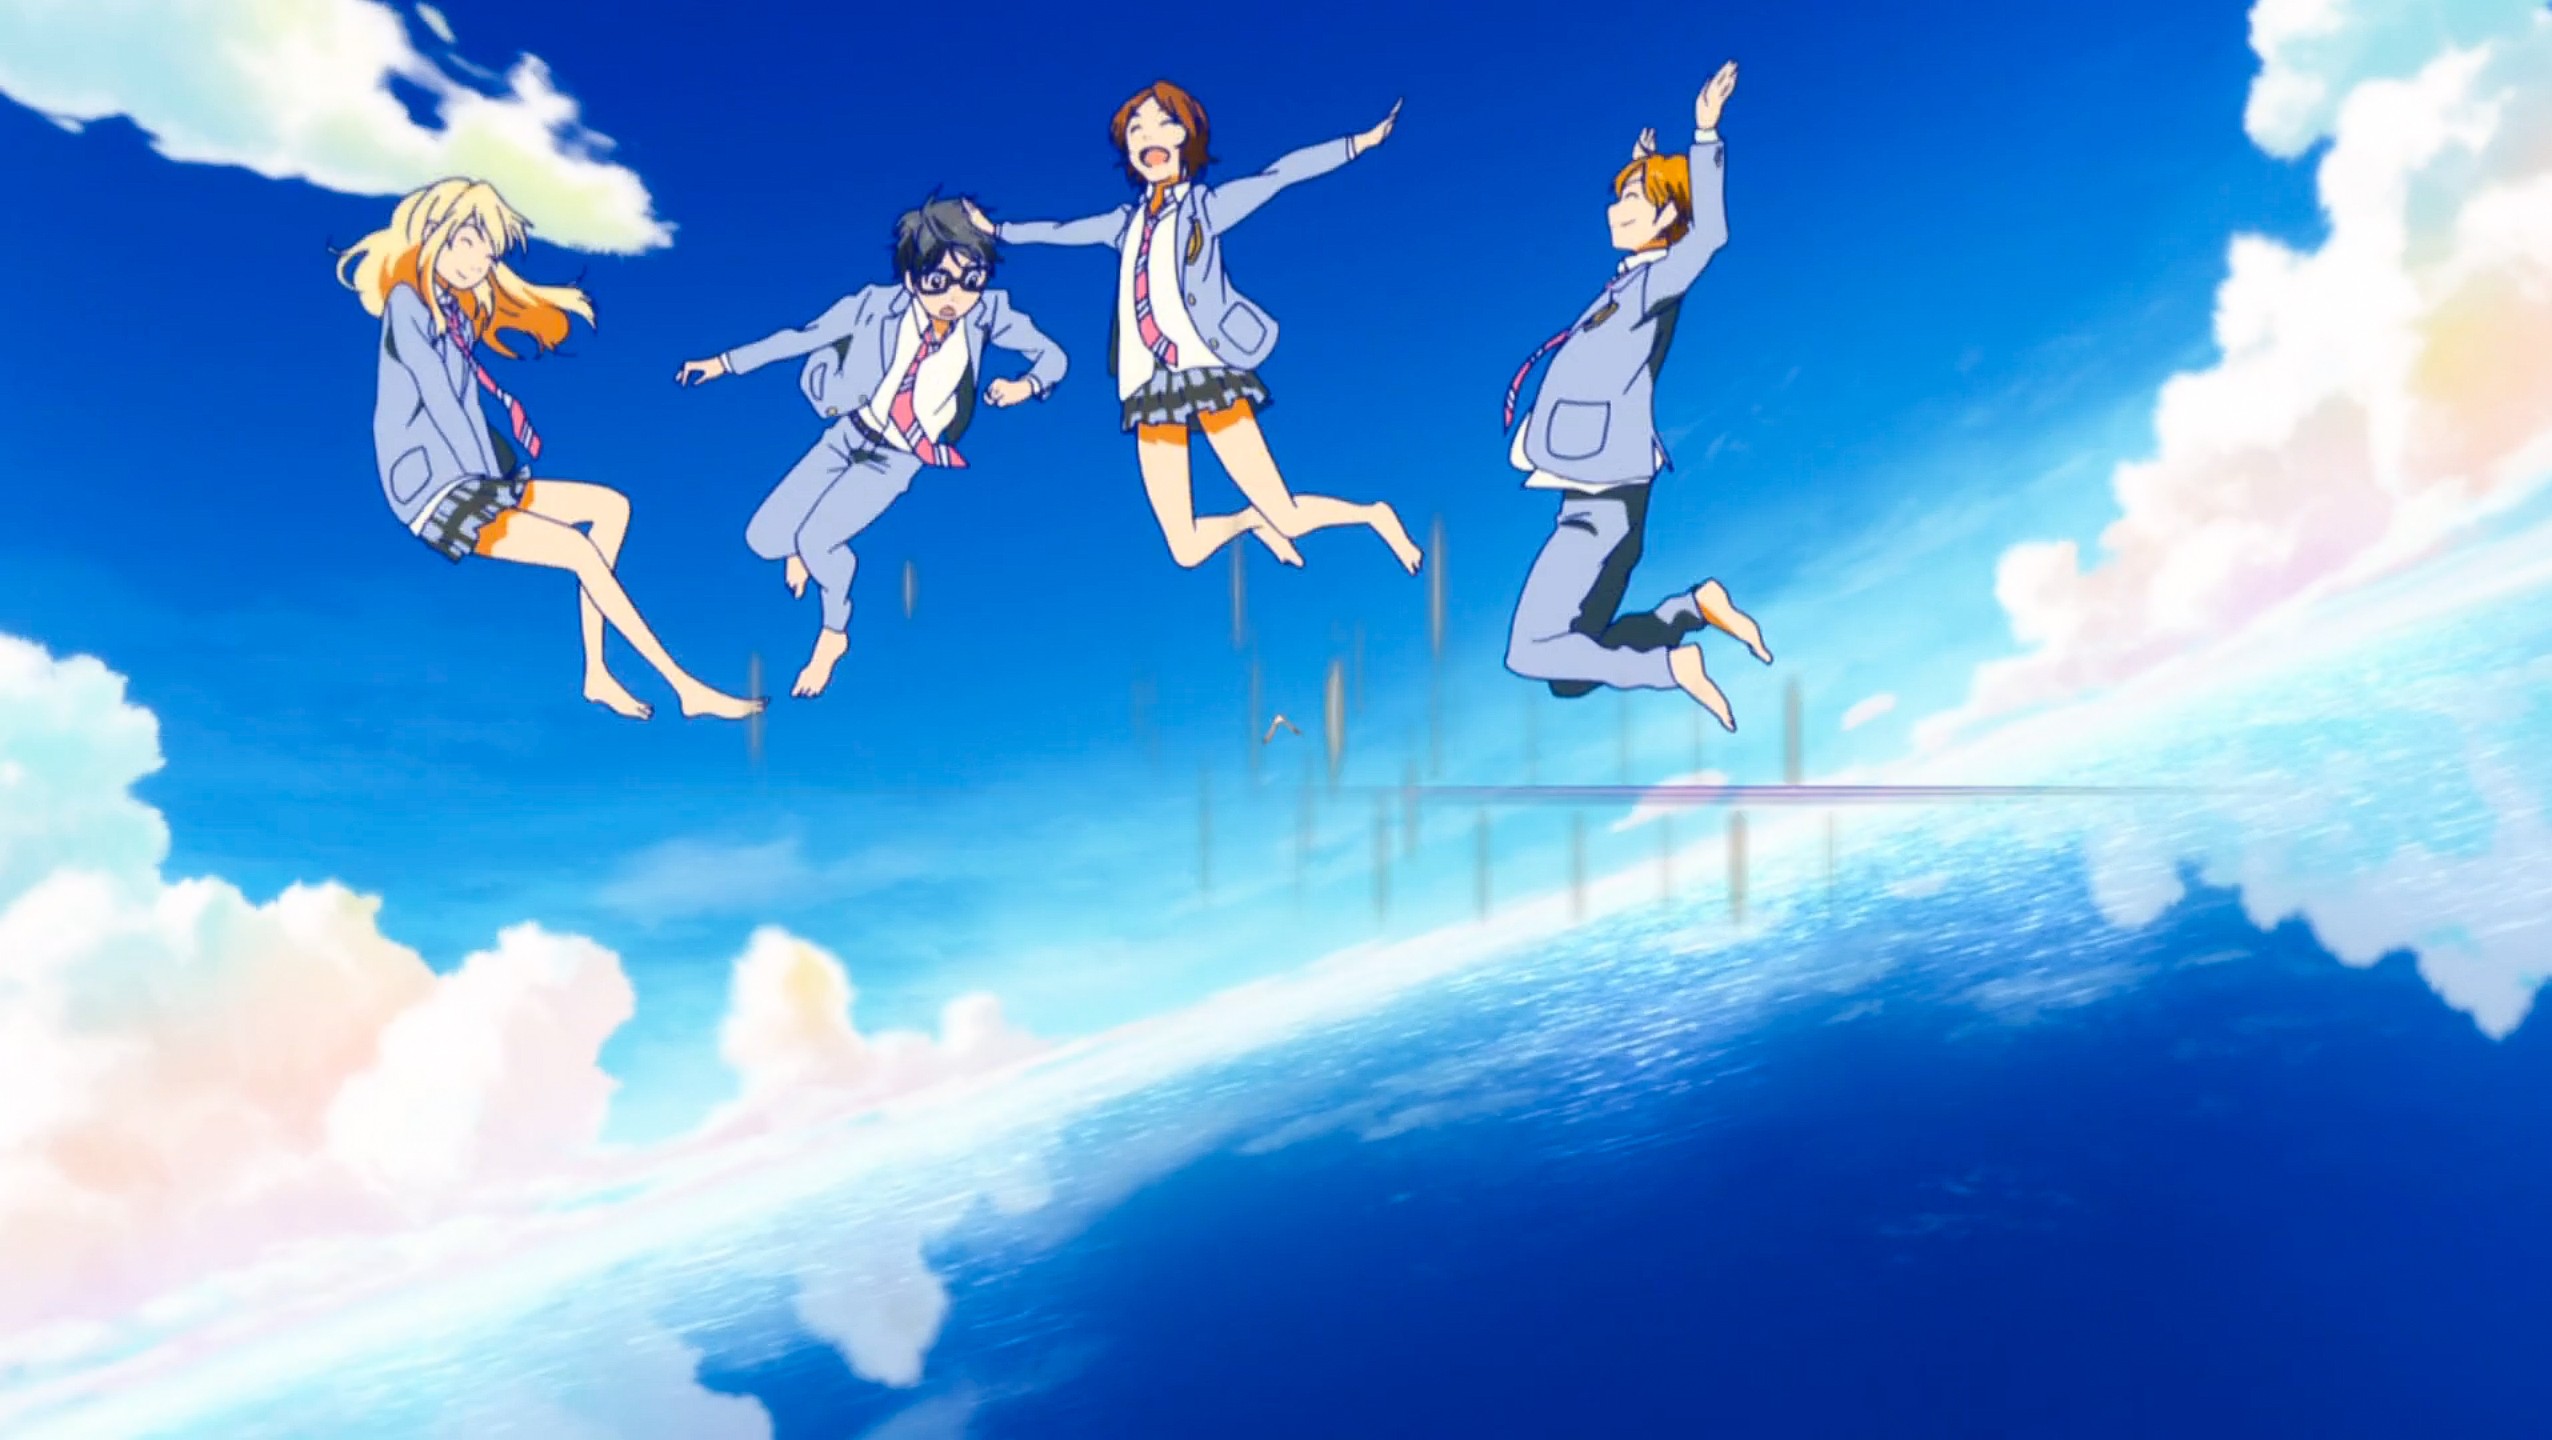 Anime 2552x1440 Shigatsu wa Kimi no Uso Sawabe Tsubaki Miyazono Kaori Arima Kousei anime girls tie skirt anime sky anime boys anime